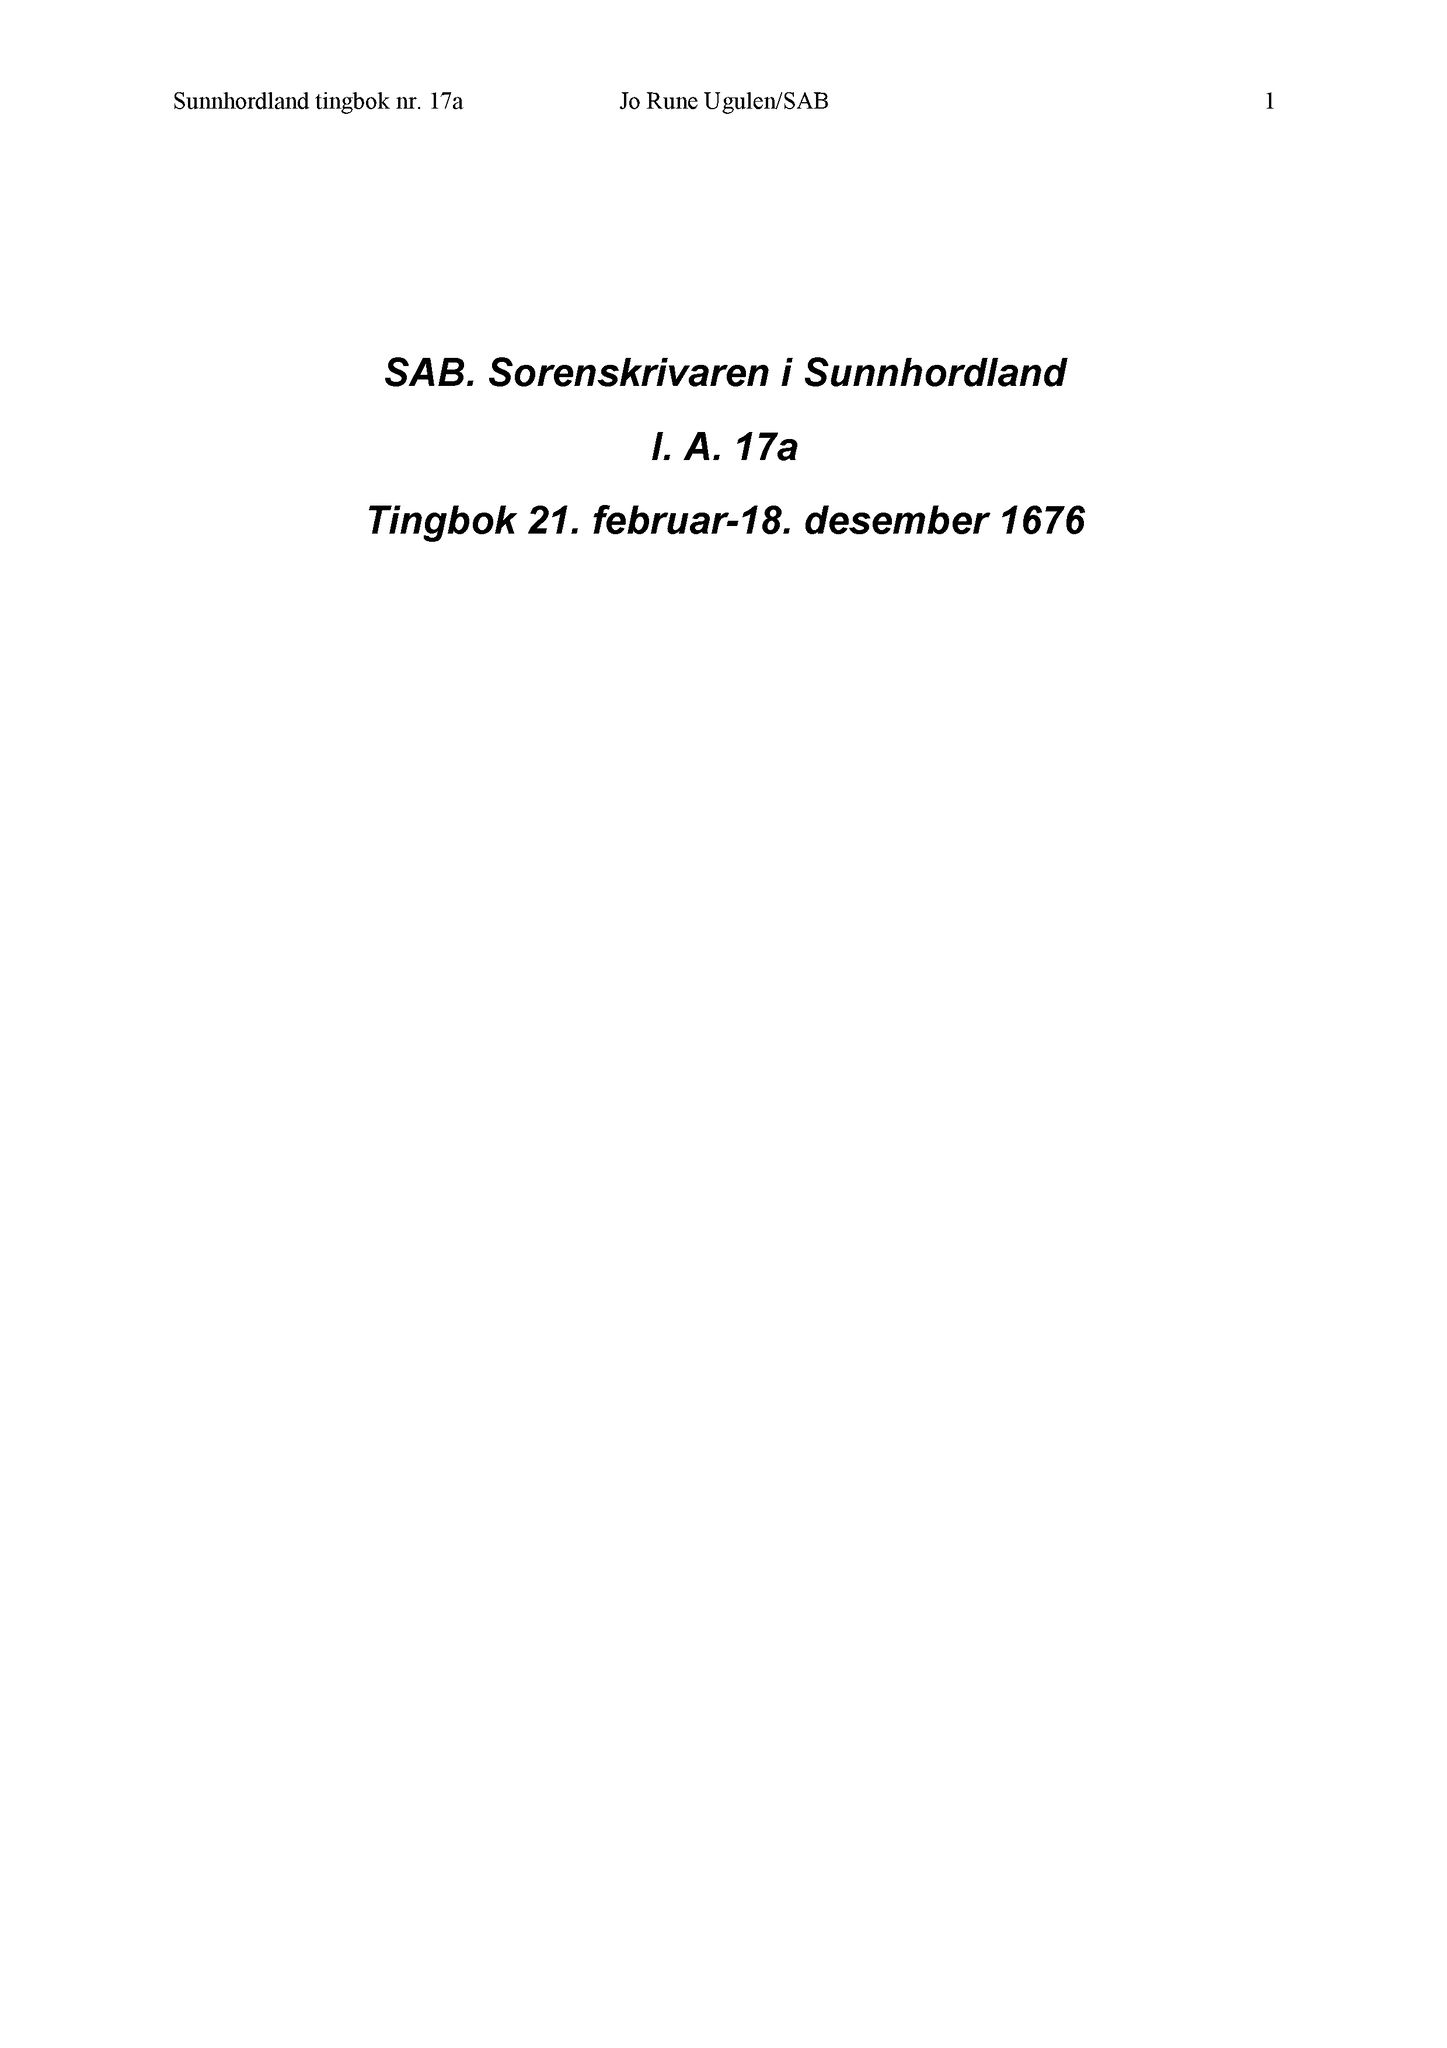 Samling av fulltekstavskrifter, SAB/FULLTEKST/A/12/0018: Sunnhordland sorenskriveri, tingbok nr. A 17a, 1676